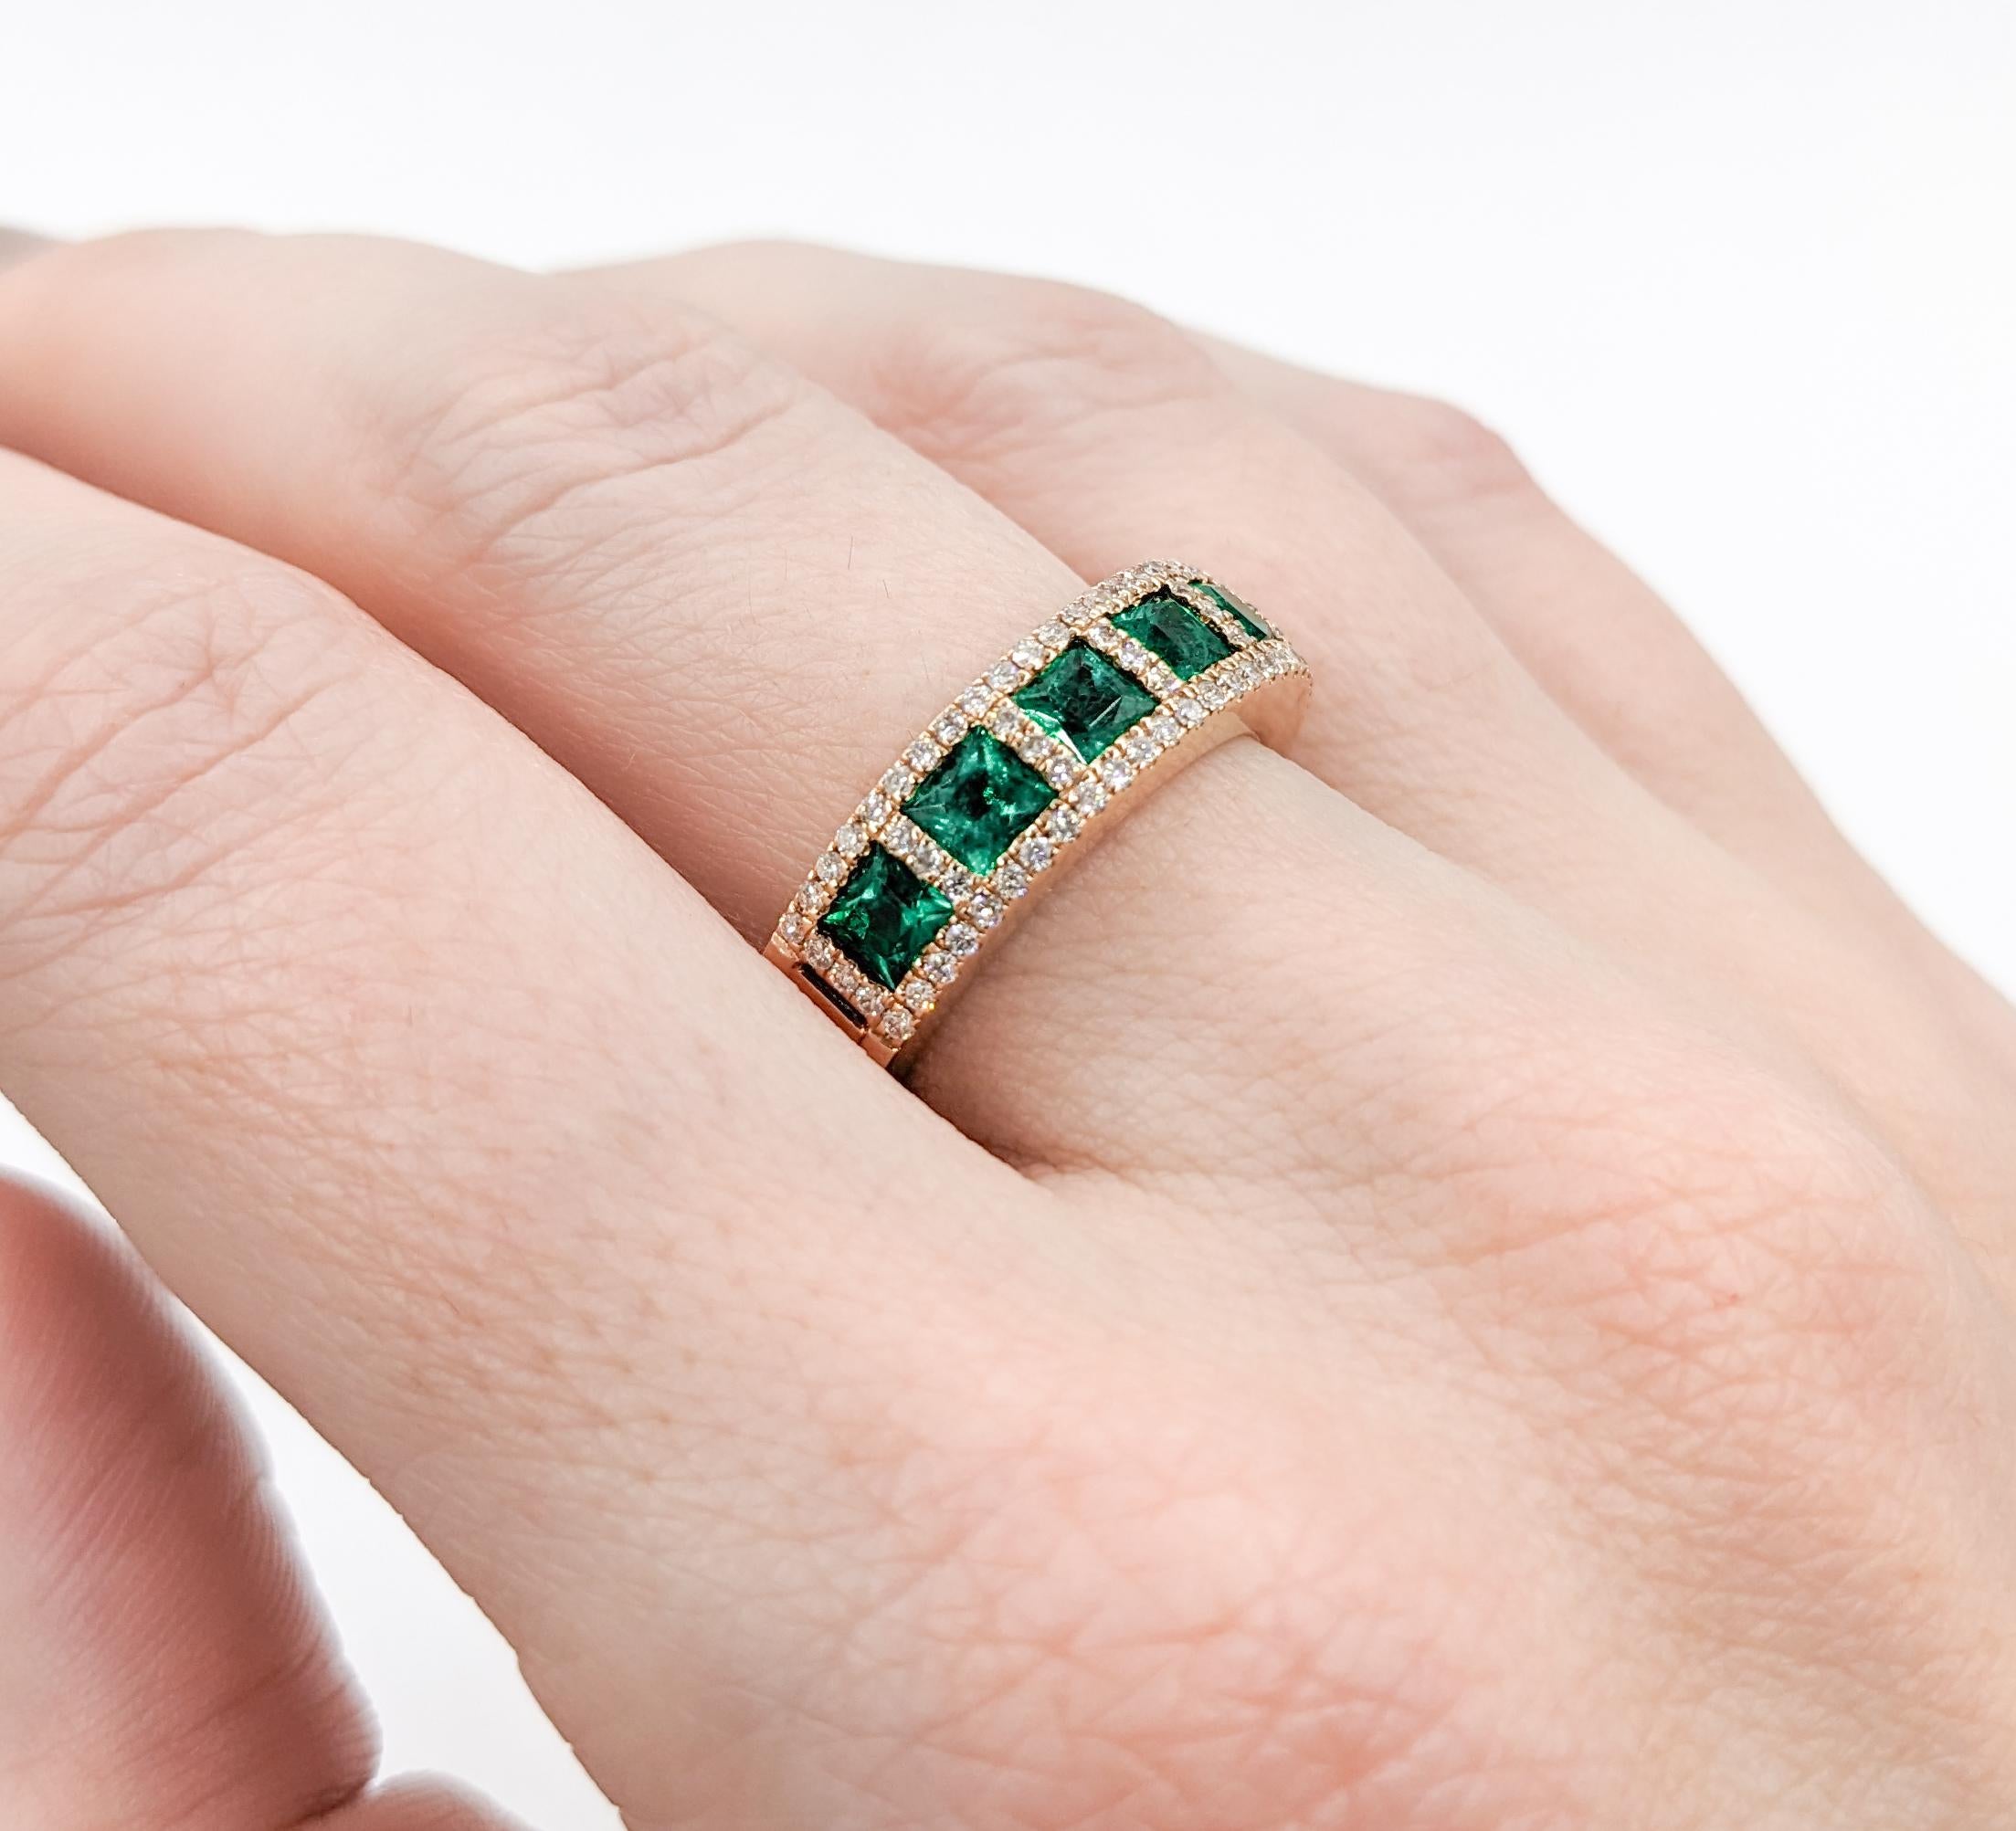 Romantischer Ring mit Smaragd und Diamant aus Roségold

Erhöhen Sie Ihre Eleganz mit diesem fesselnden Ring, der sorgfältig aus 14 Karat Roségold gefertigt ist. Er präsentiert einen Satz runder Diamanten mit einem Gewicht von 0,44 ct, die durch